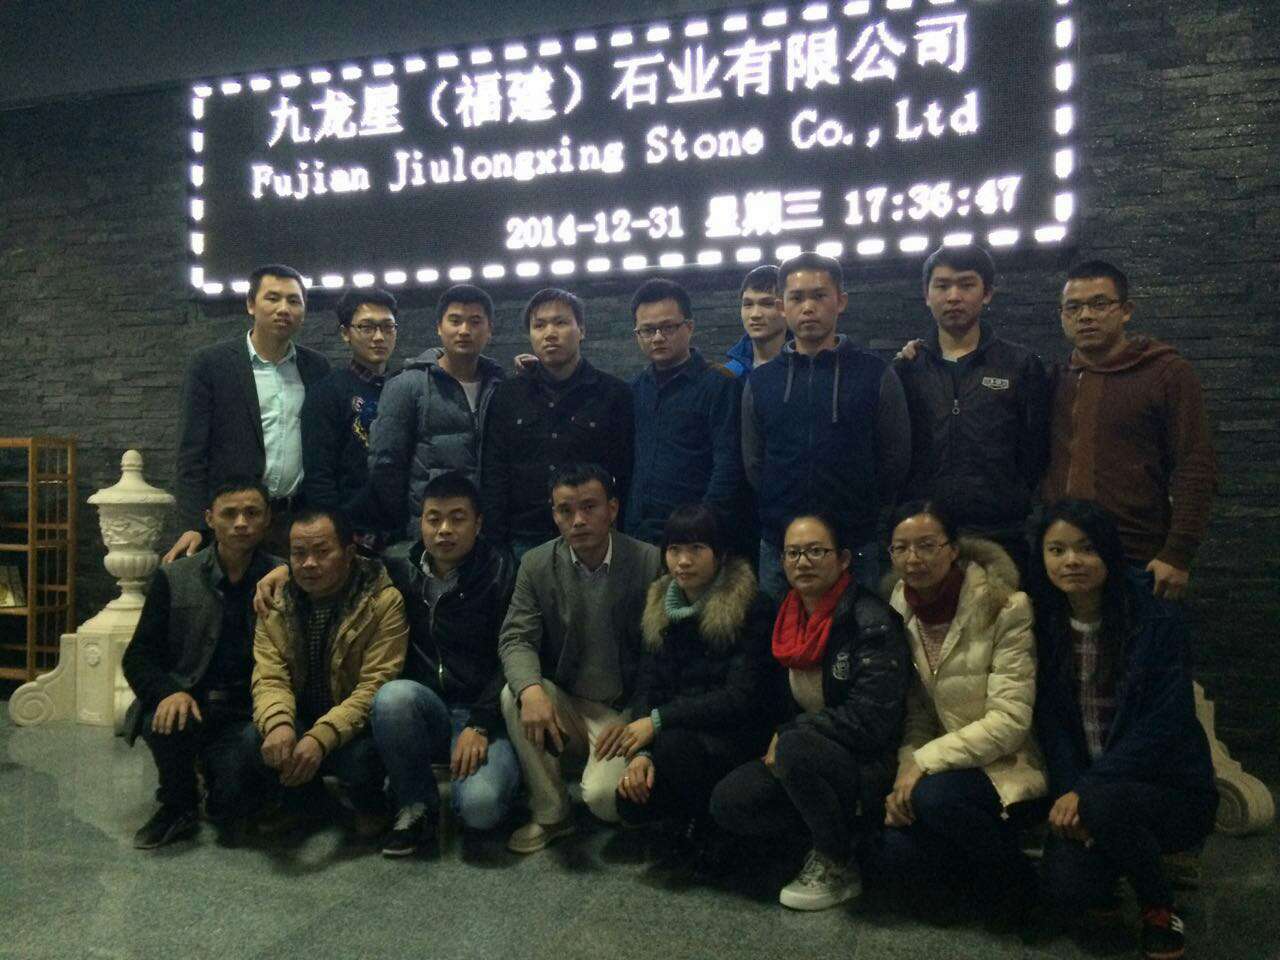 Fujian Jiulongxing Stone Co., Ltd.